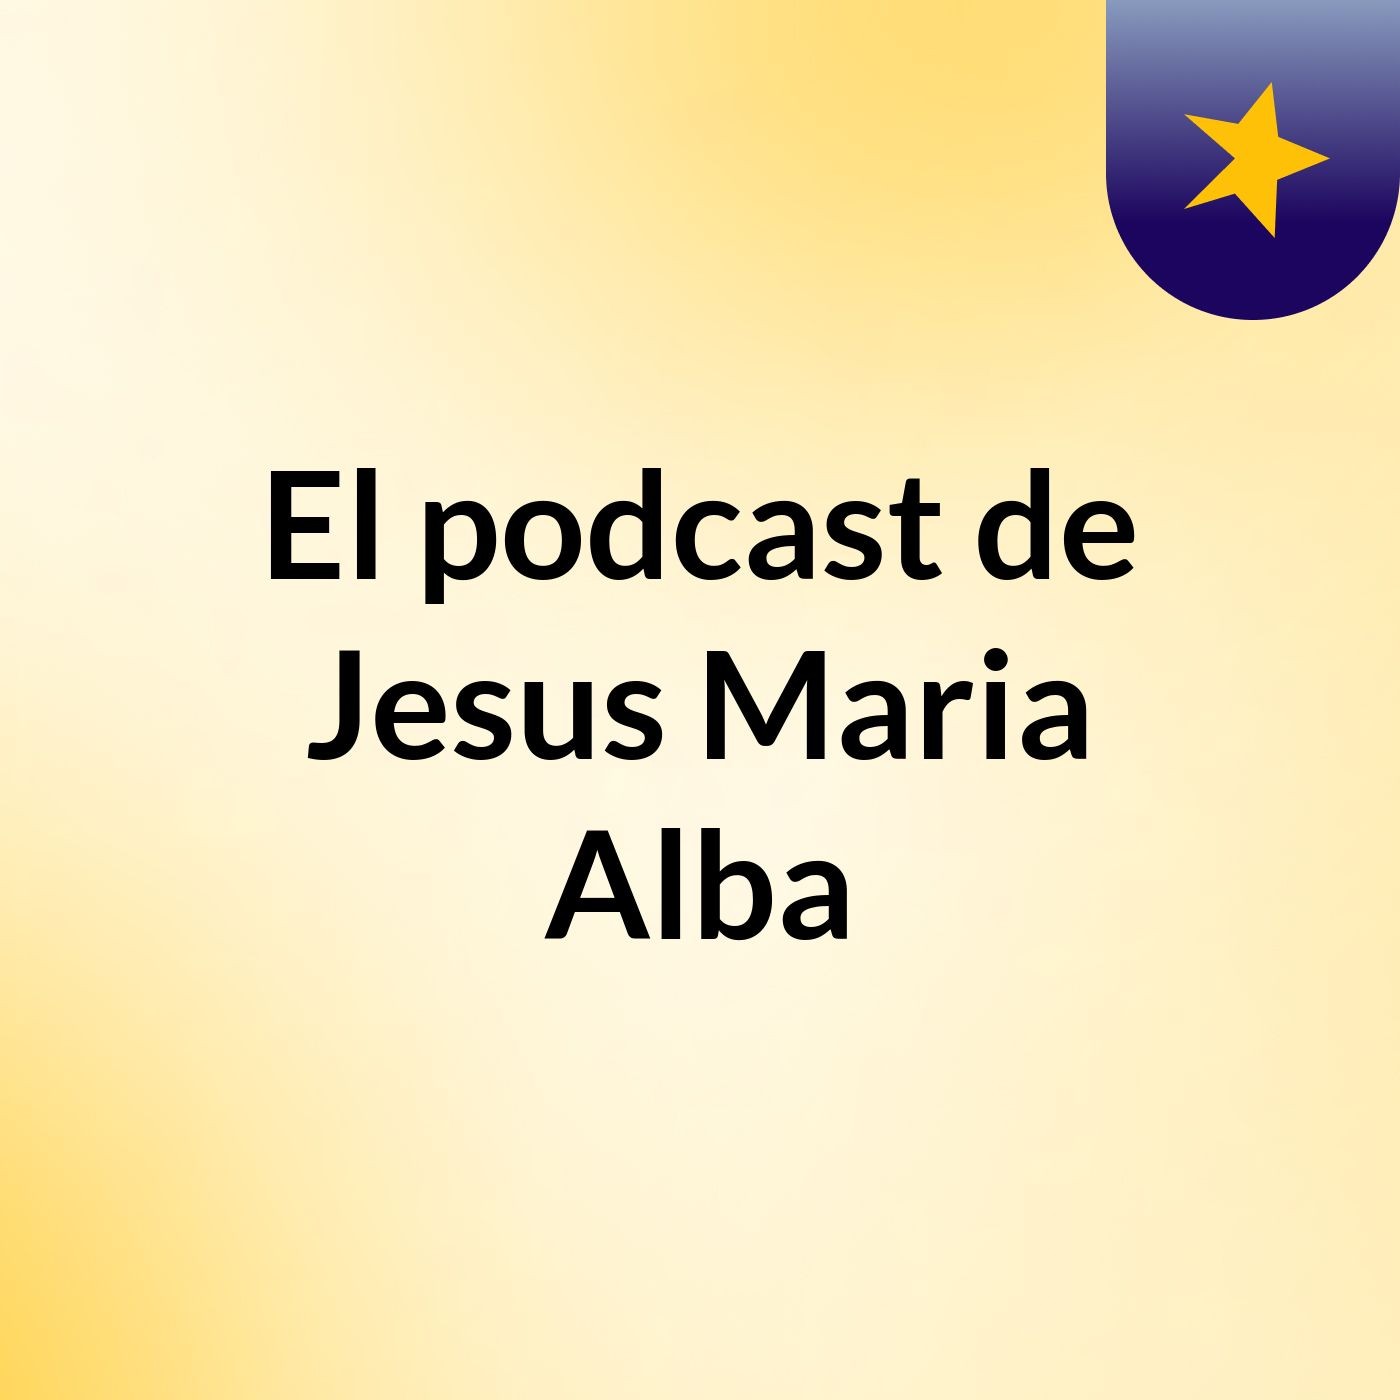 El podcast de Jesus Maria Alba